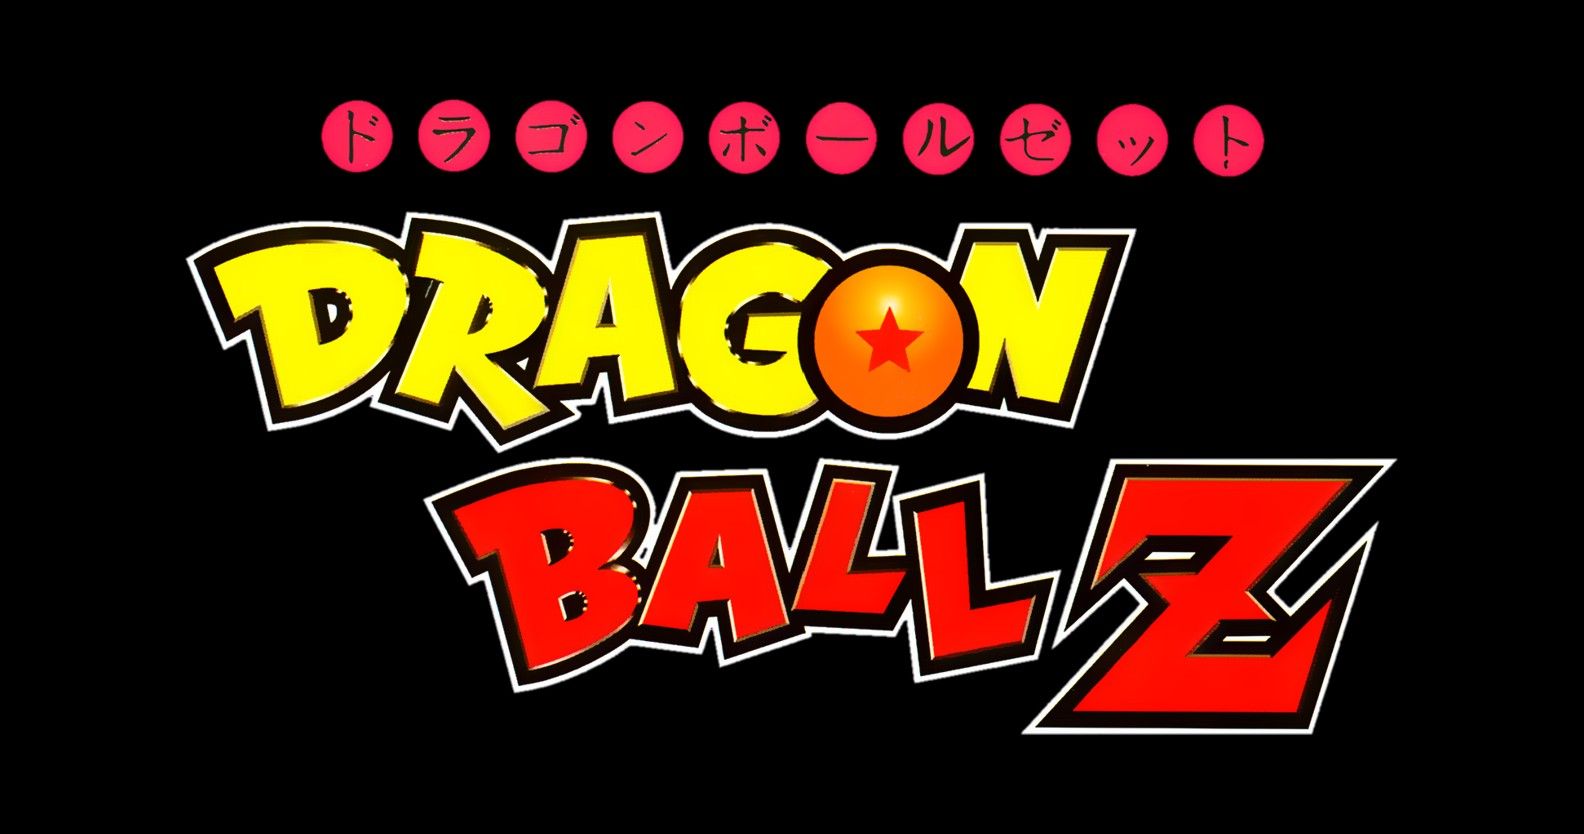 Dragon Ball Z logo by FirzeCrescent on DeviantArt